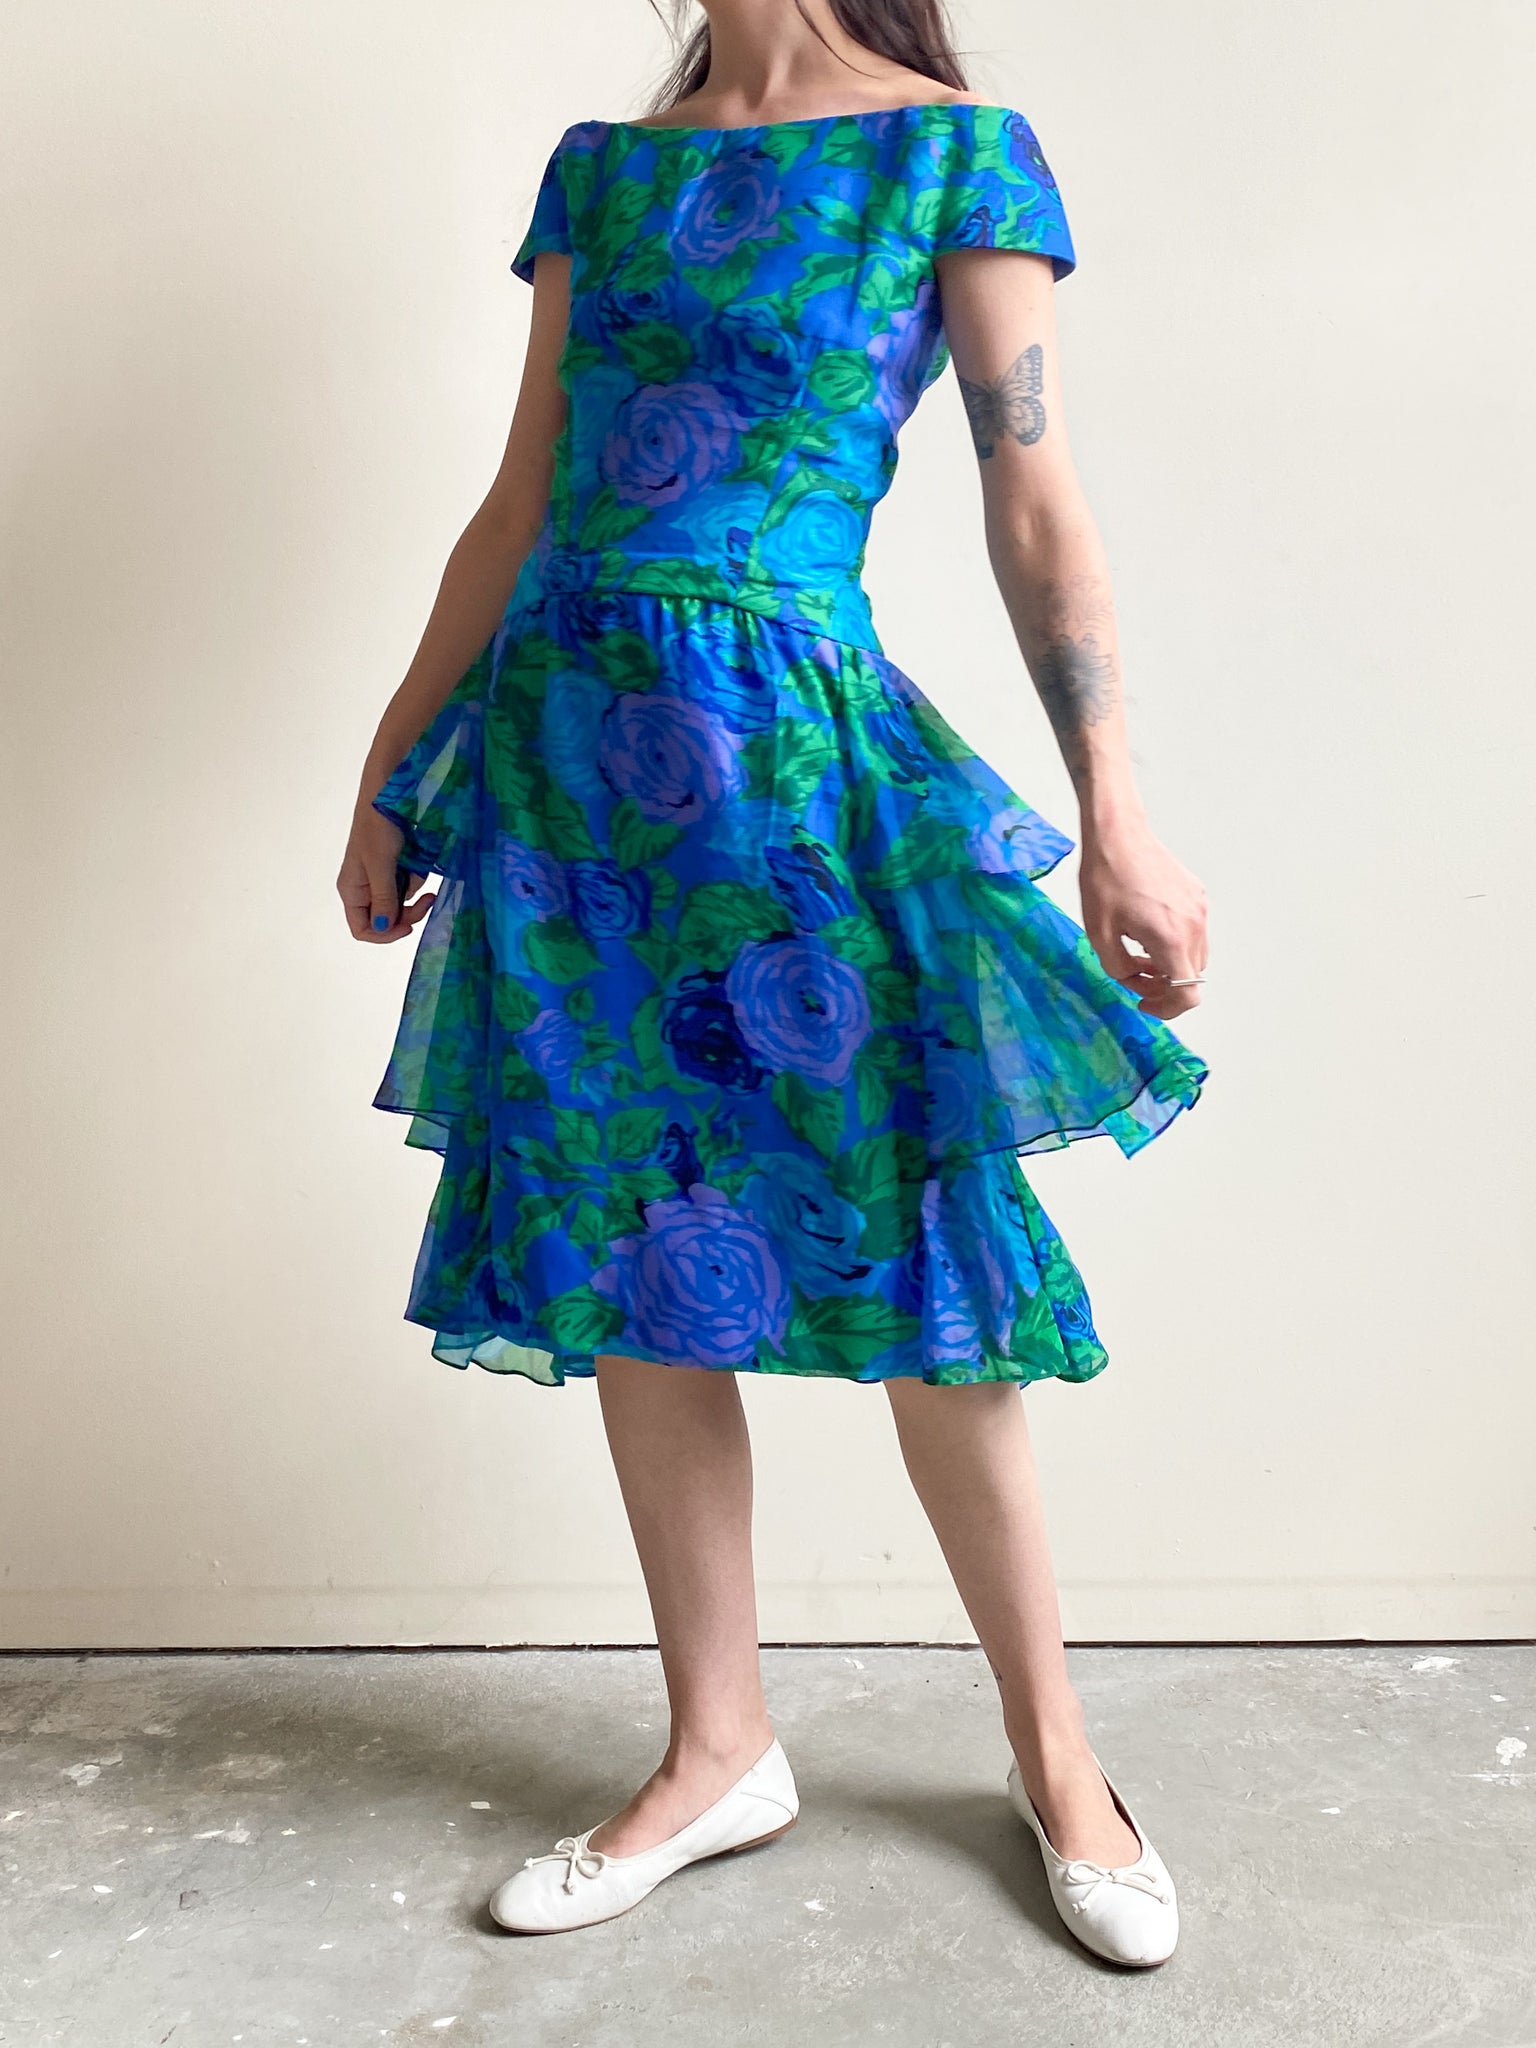 Vintage Elizabeth Arden Blue, Green, & Purple Floral Off-the-Shoulder Dress (S)